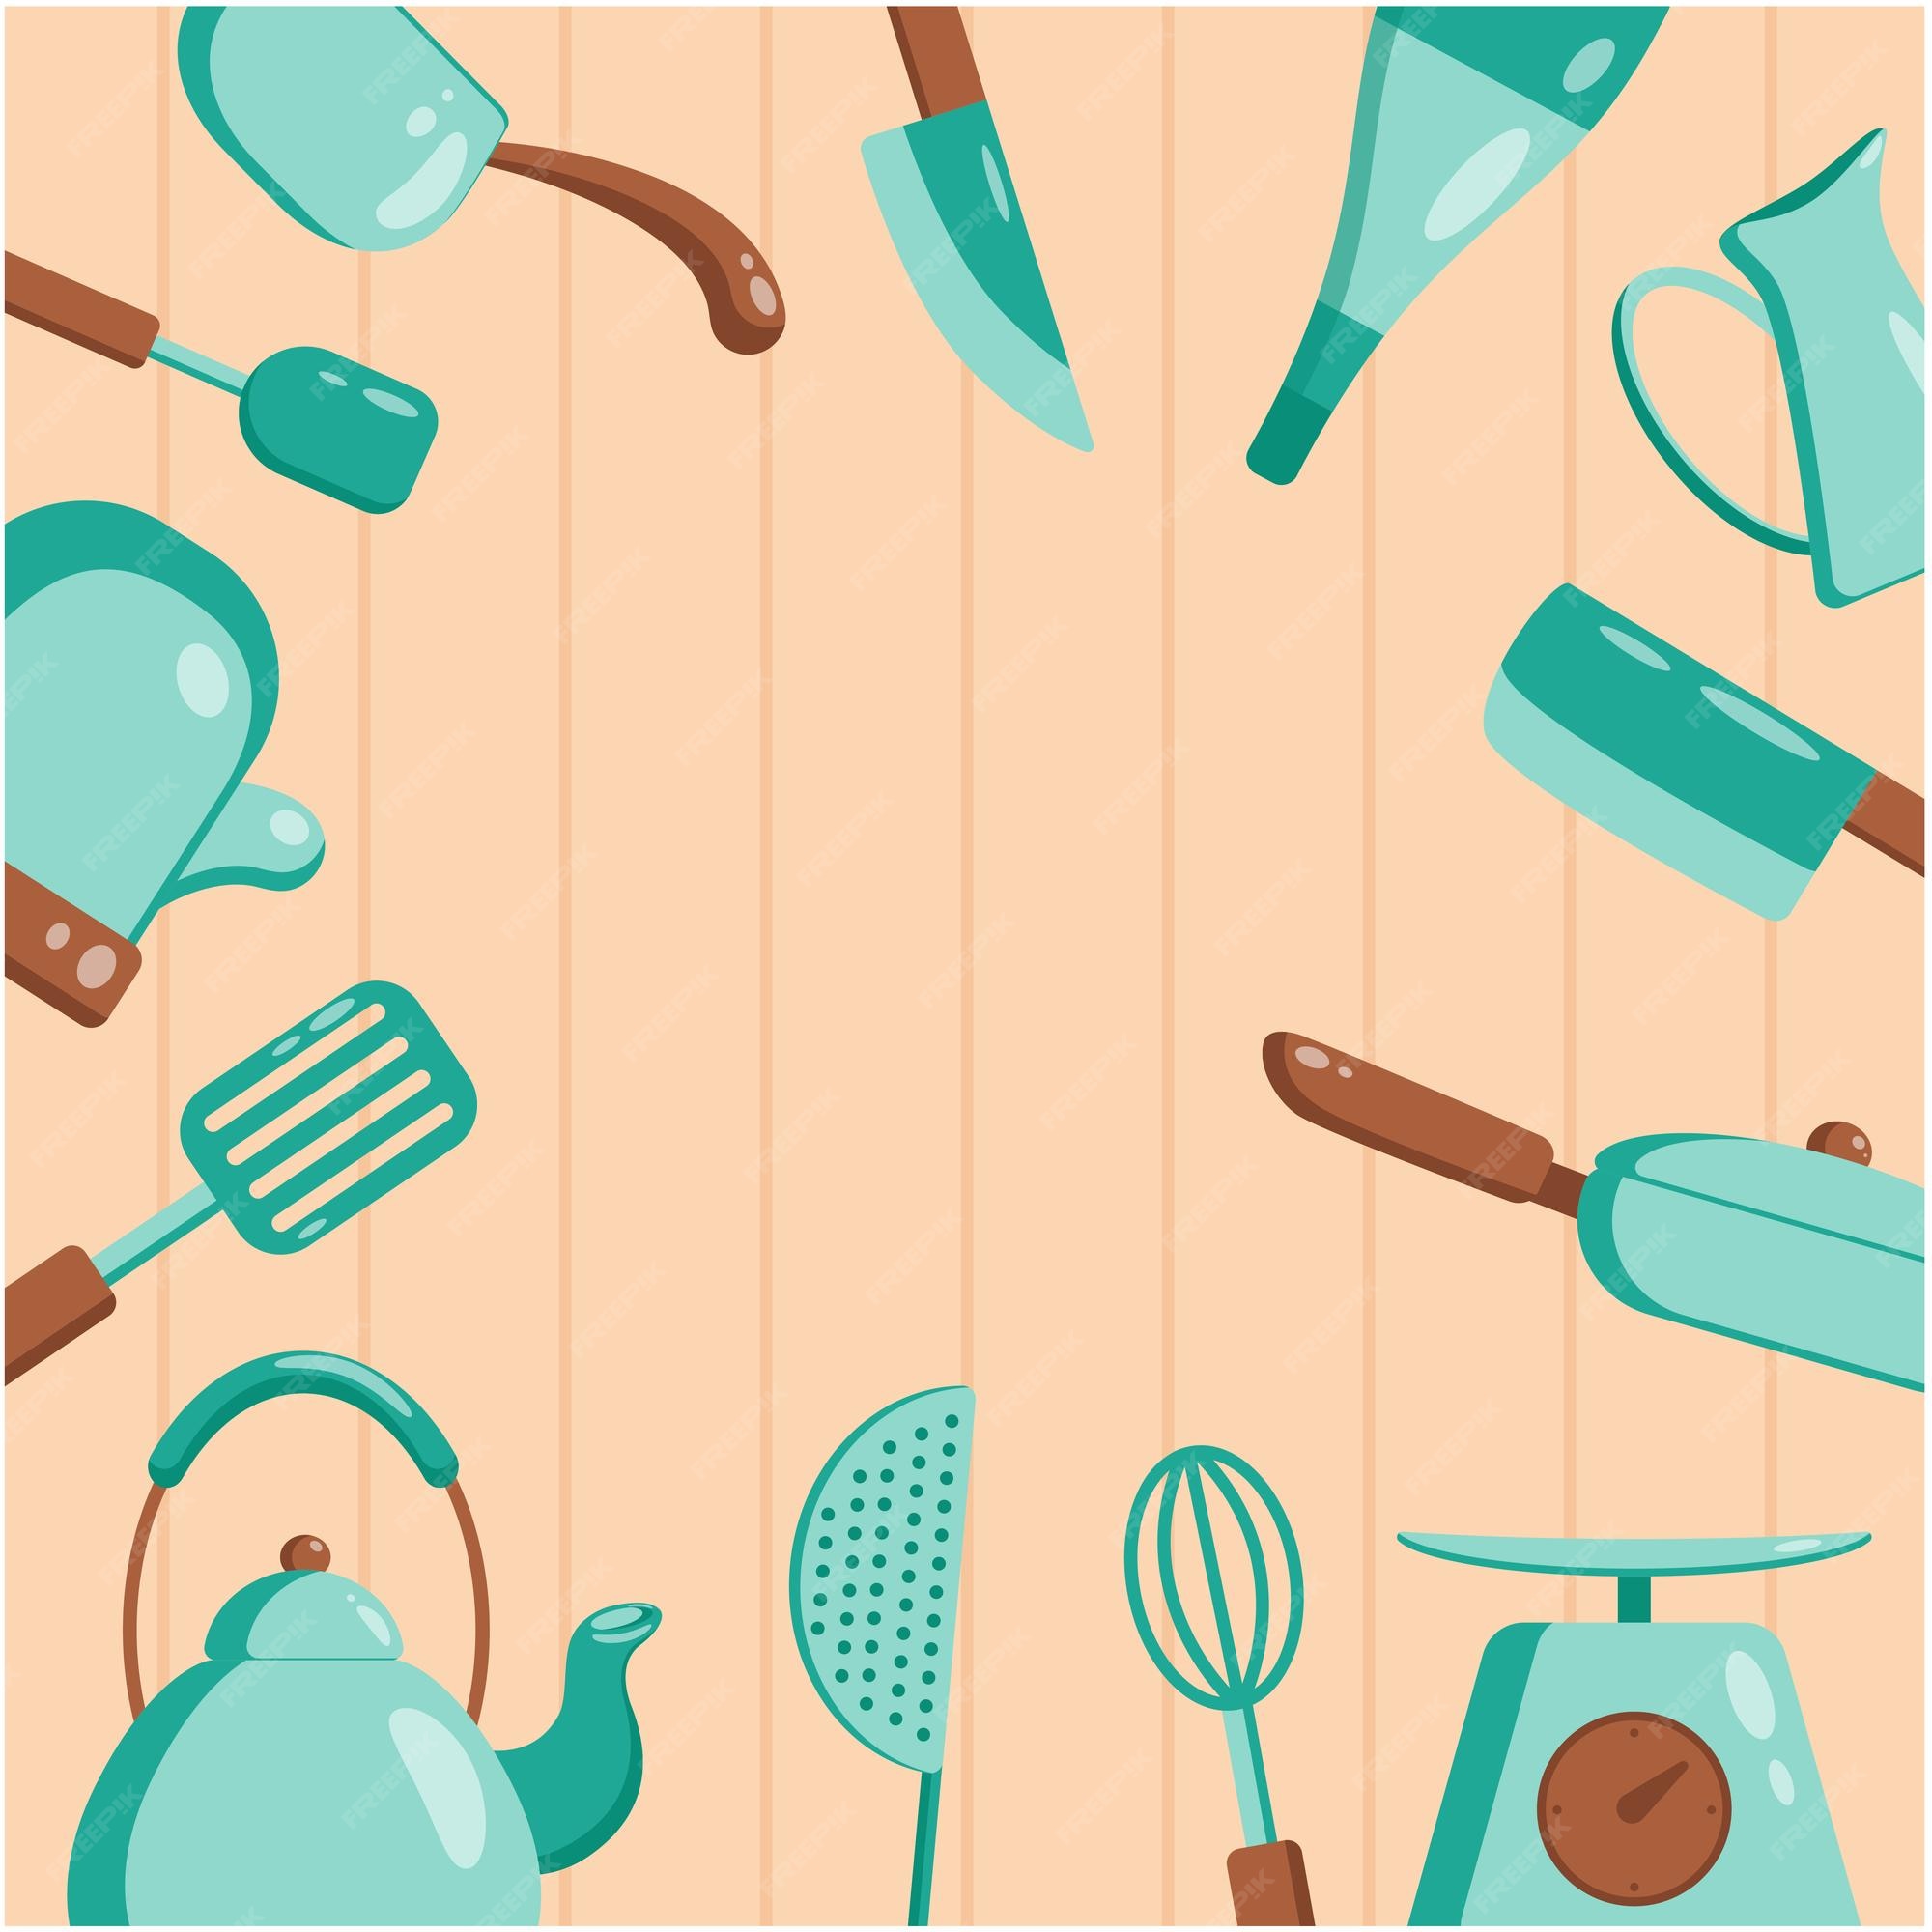 Những công cụ nhà bếp hiện đại và chất lượng sẽ giúp bạn nấu nướng đơn giản hơn và đạt hiệu quả cao hơn. Hãy xem ngay hình ảnh Kitchen tools để lựa chọn những sản phẩm phù hợp và trang bị cho căn bếp của bạn nhé!